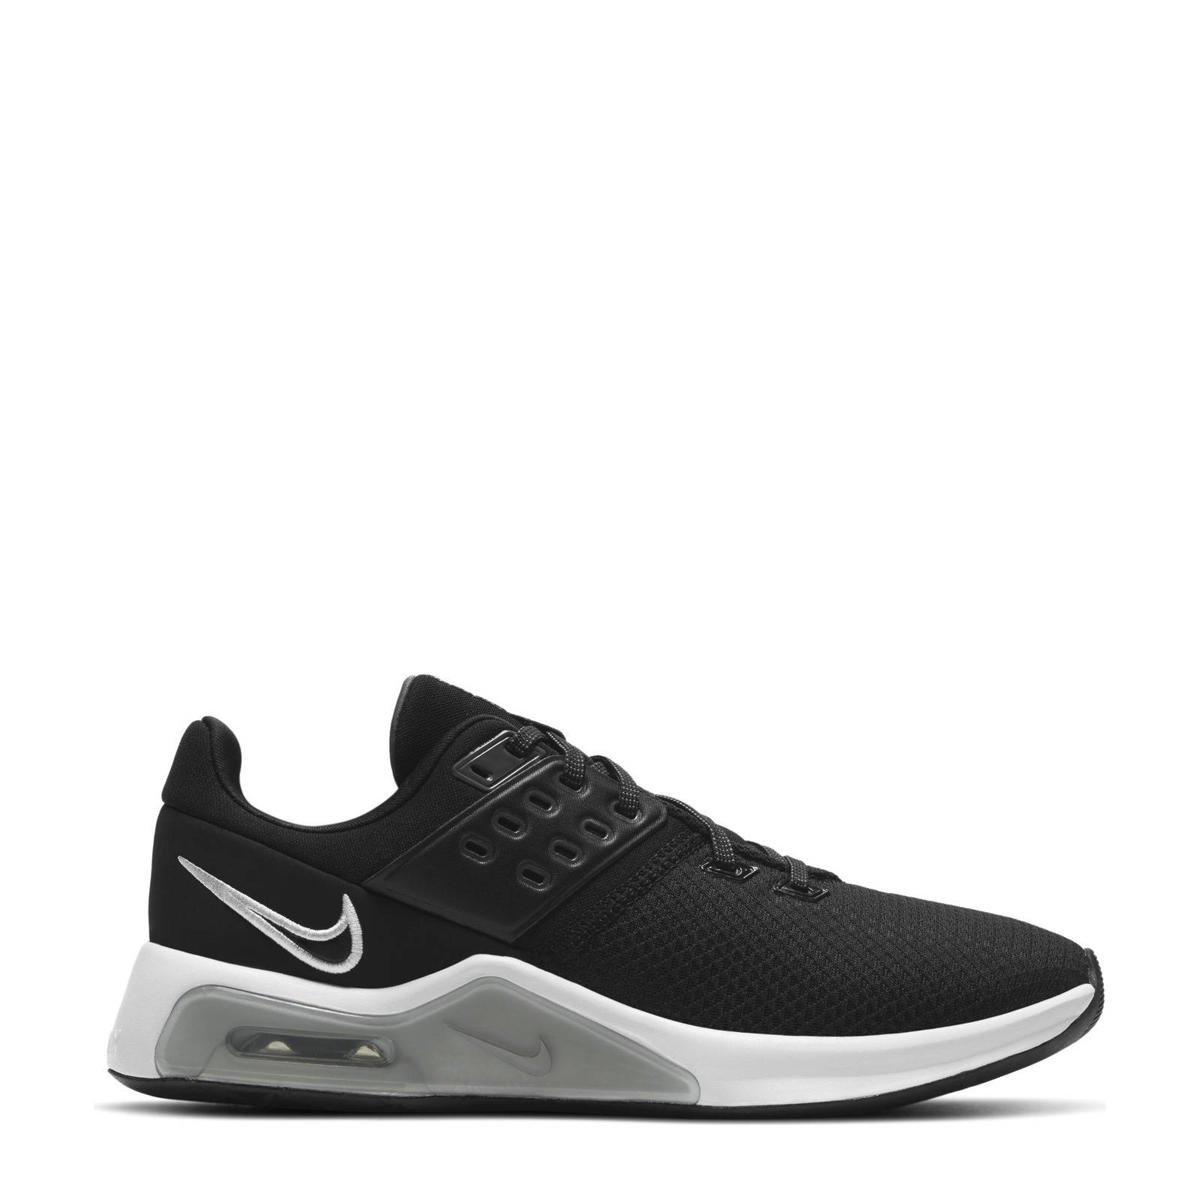 Leegte advocaat omzeilen Nike Air Max Bella 4 fitness schoenen zwart/wit/grijs | wehkamp